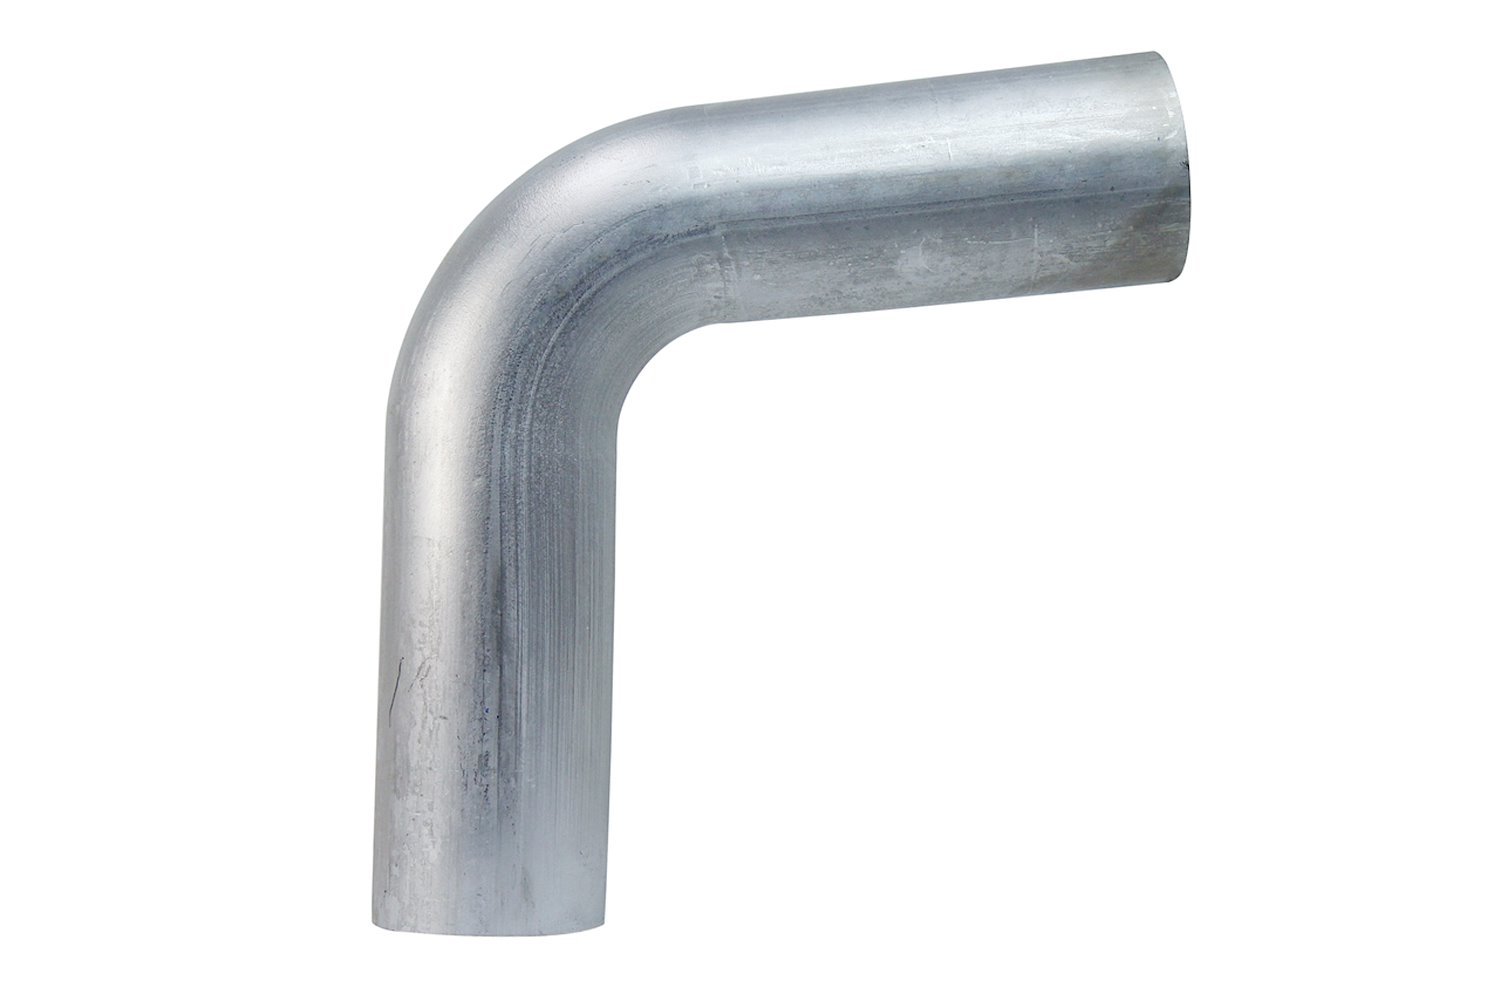 AT80-450-CLR-6 Aluminum Elbow Tube, 6061 Aluminum, 80-Degree Bend Elbow Tubing, 4-1/2 in. OD, Large Radius, 6 in. CLR